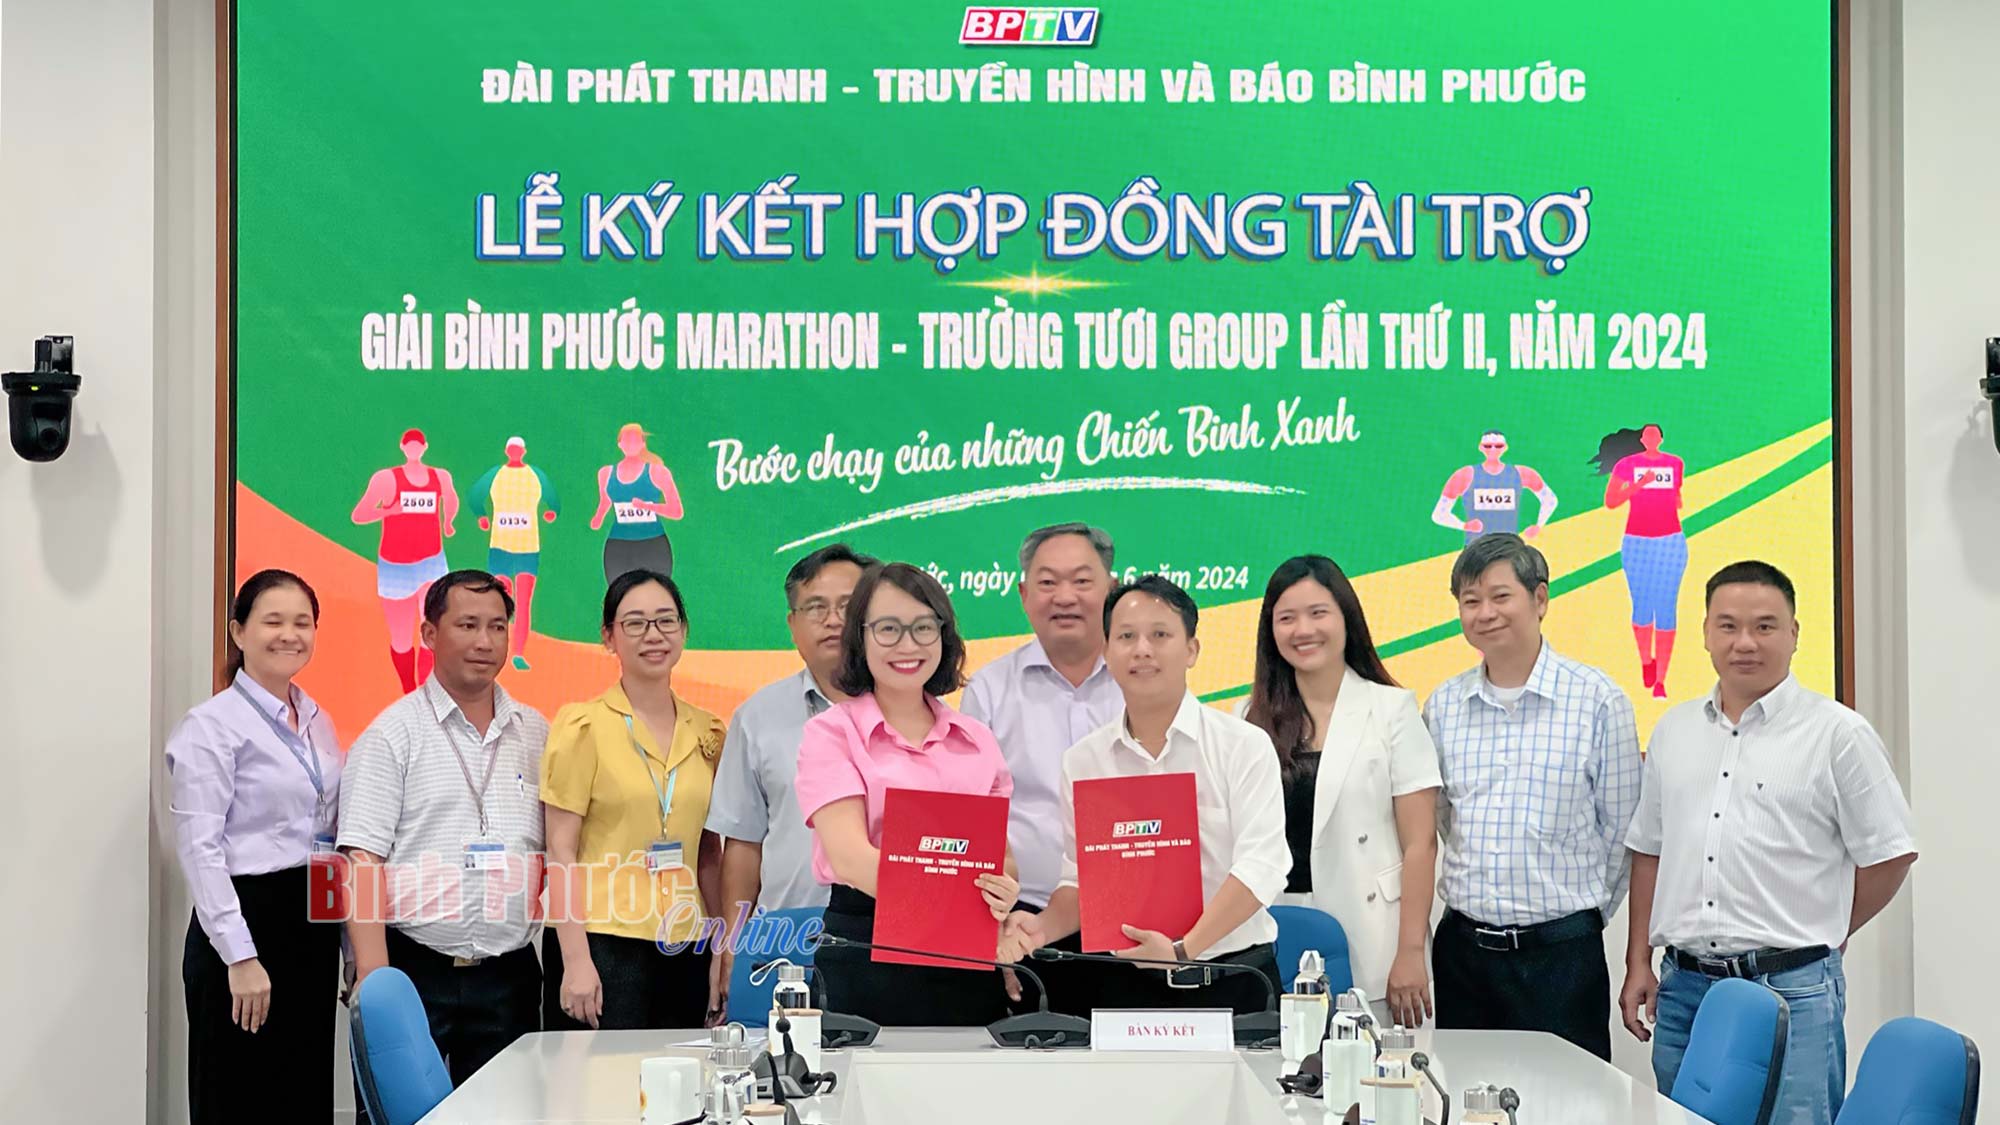 BPTV và Hoàng Duy Sport ký kết tài trợ giải Bình Phước Marathon - Trường Tươi Group lần thứ II